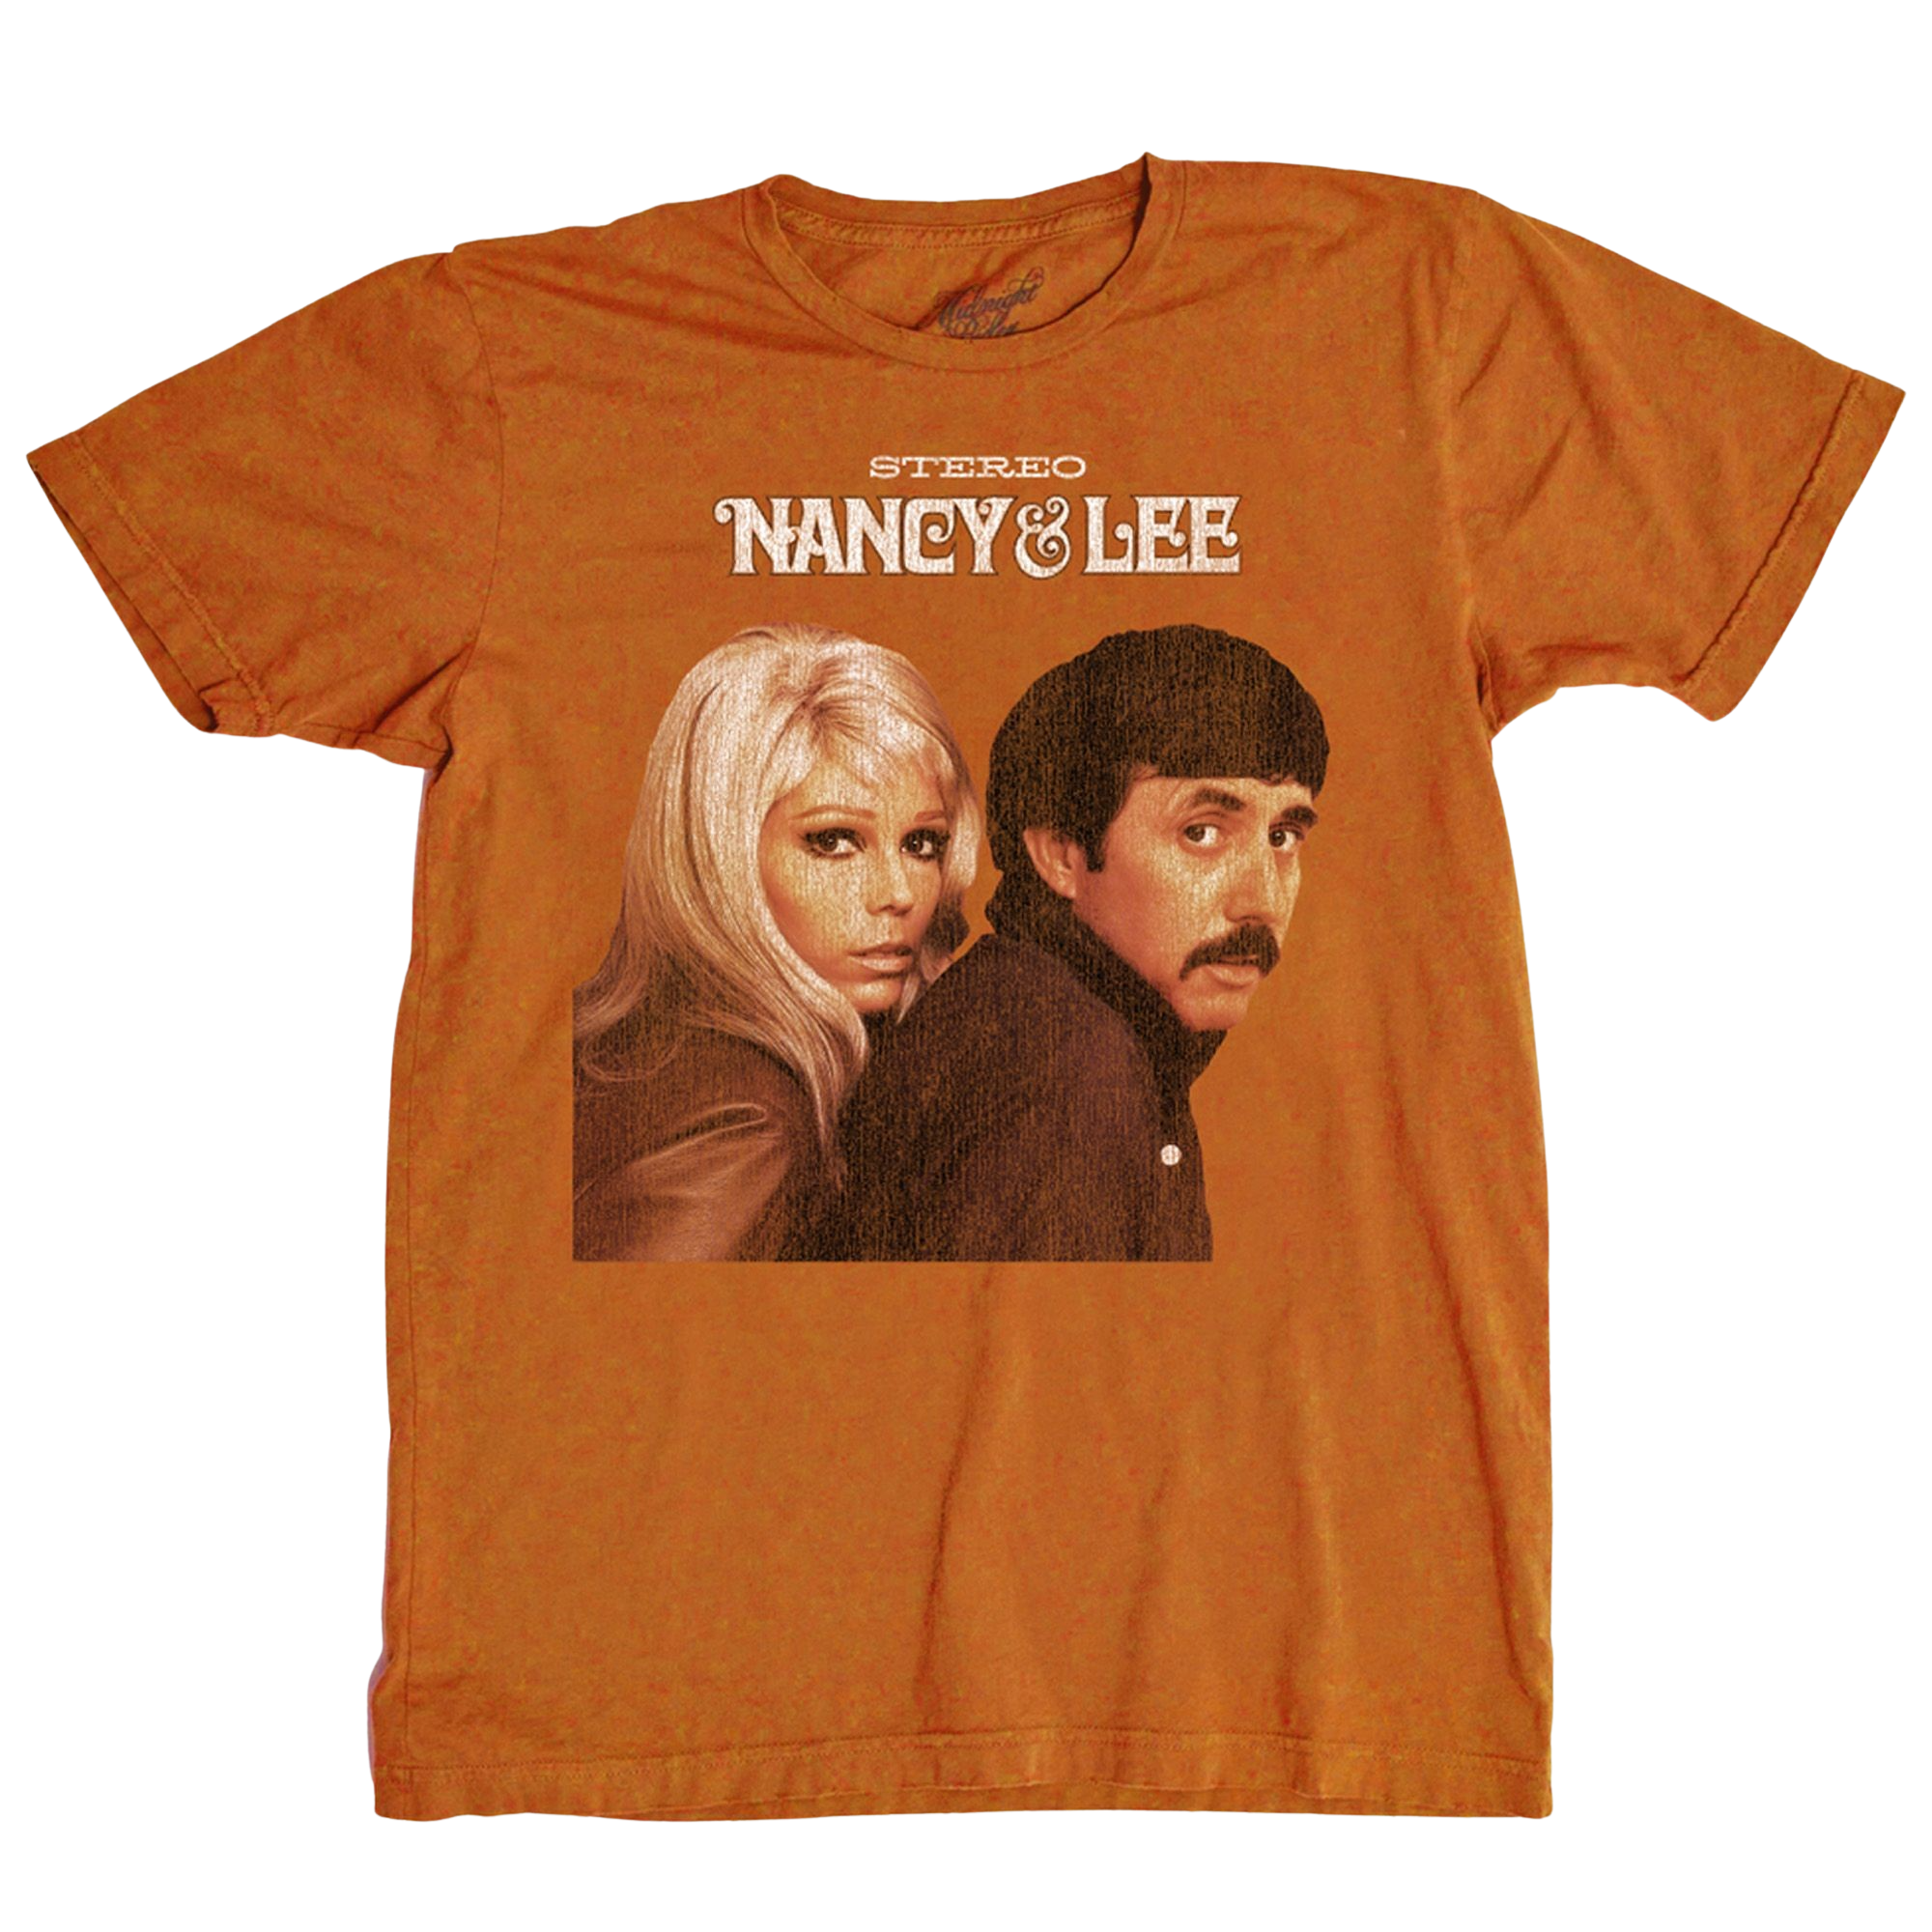 Nancy & Lee Midnight Rider T-Shirt – Light in the Attic